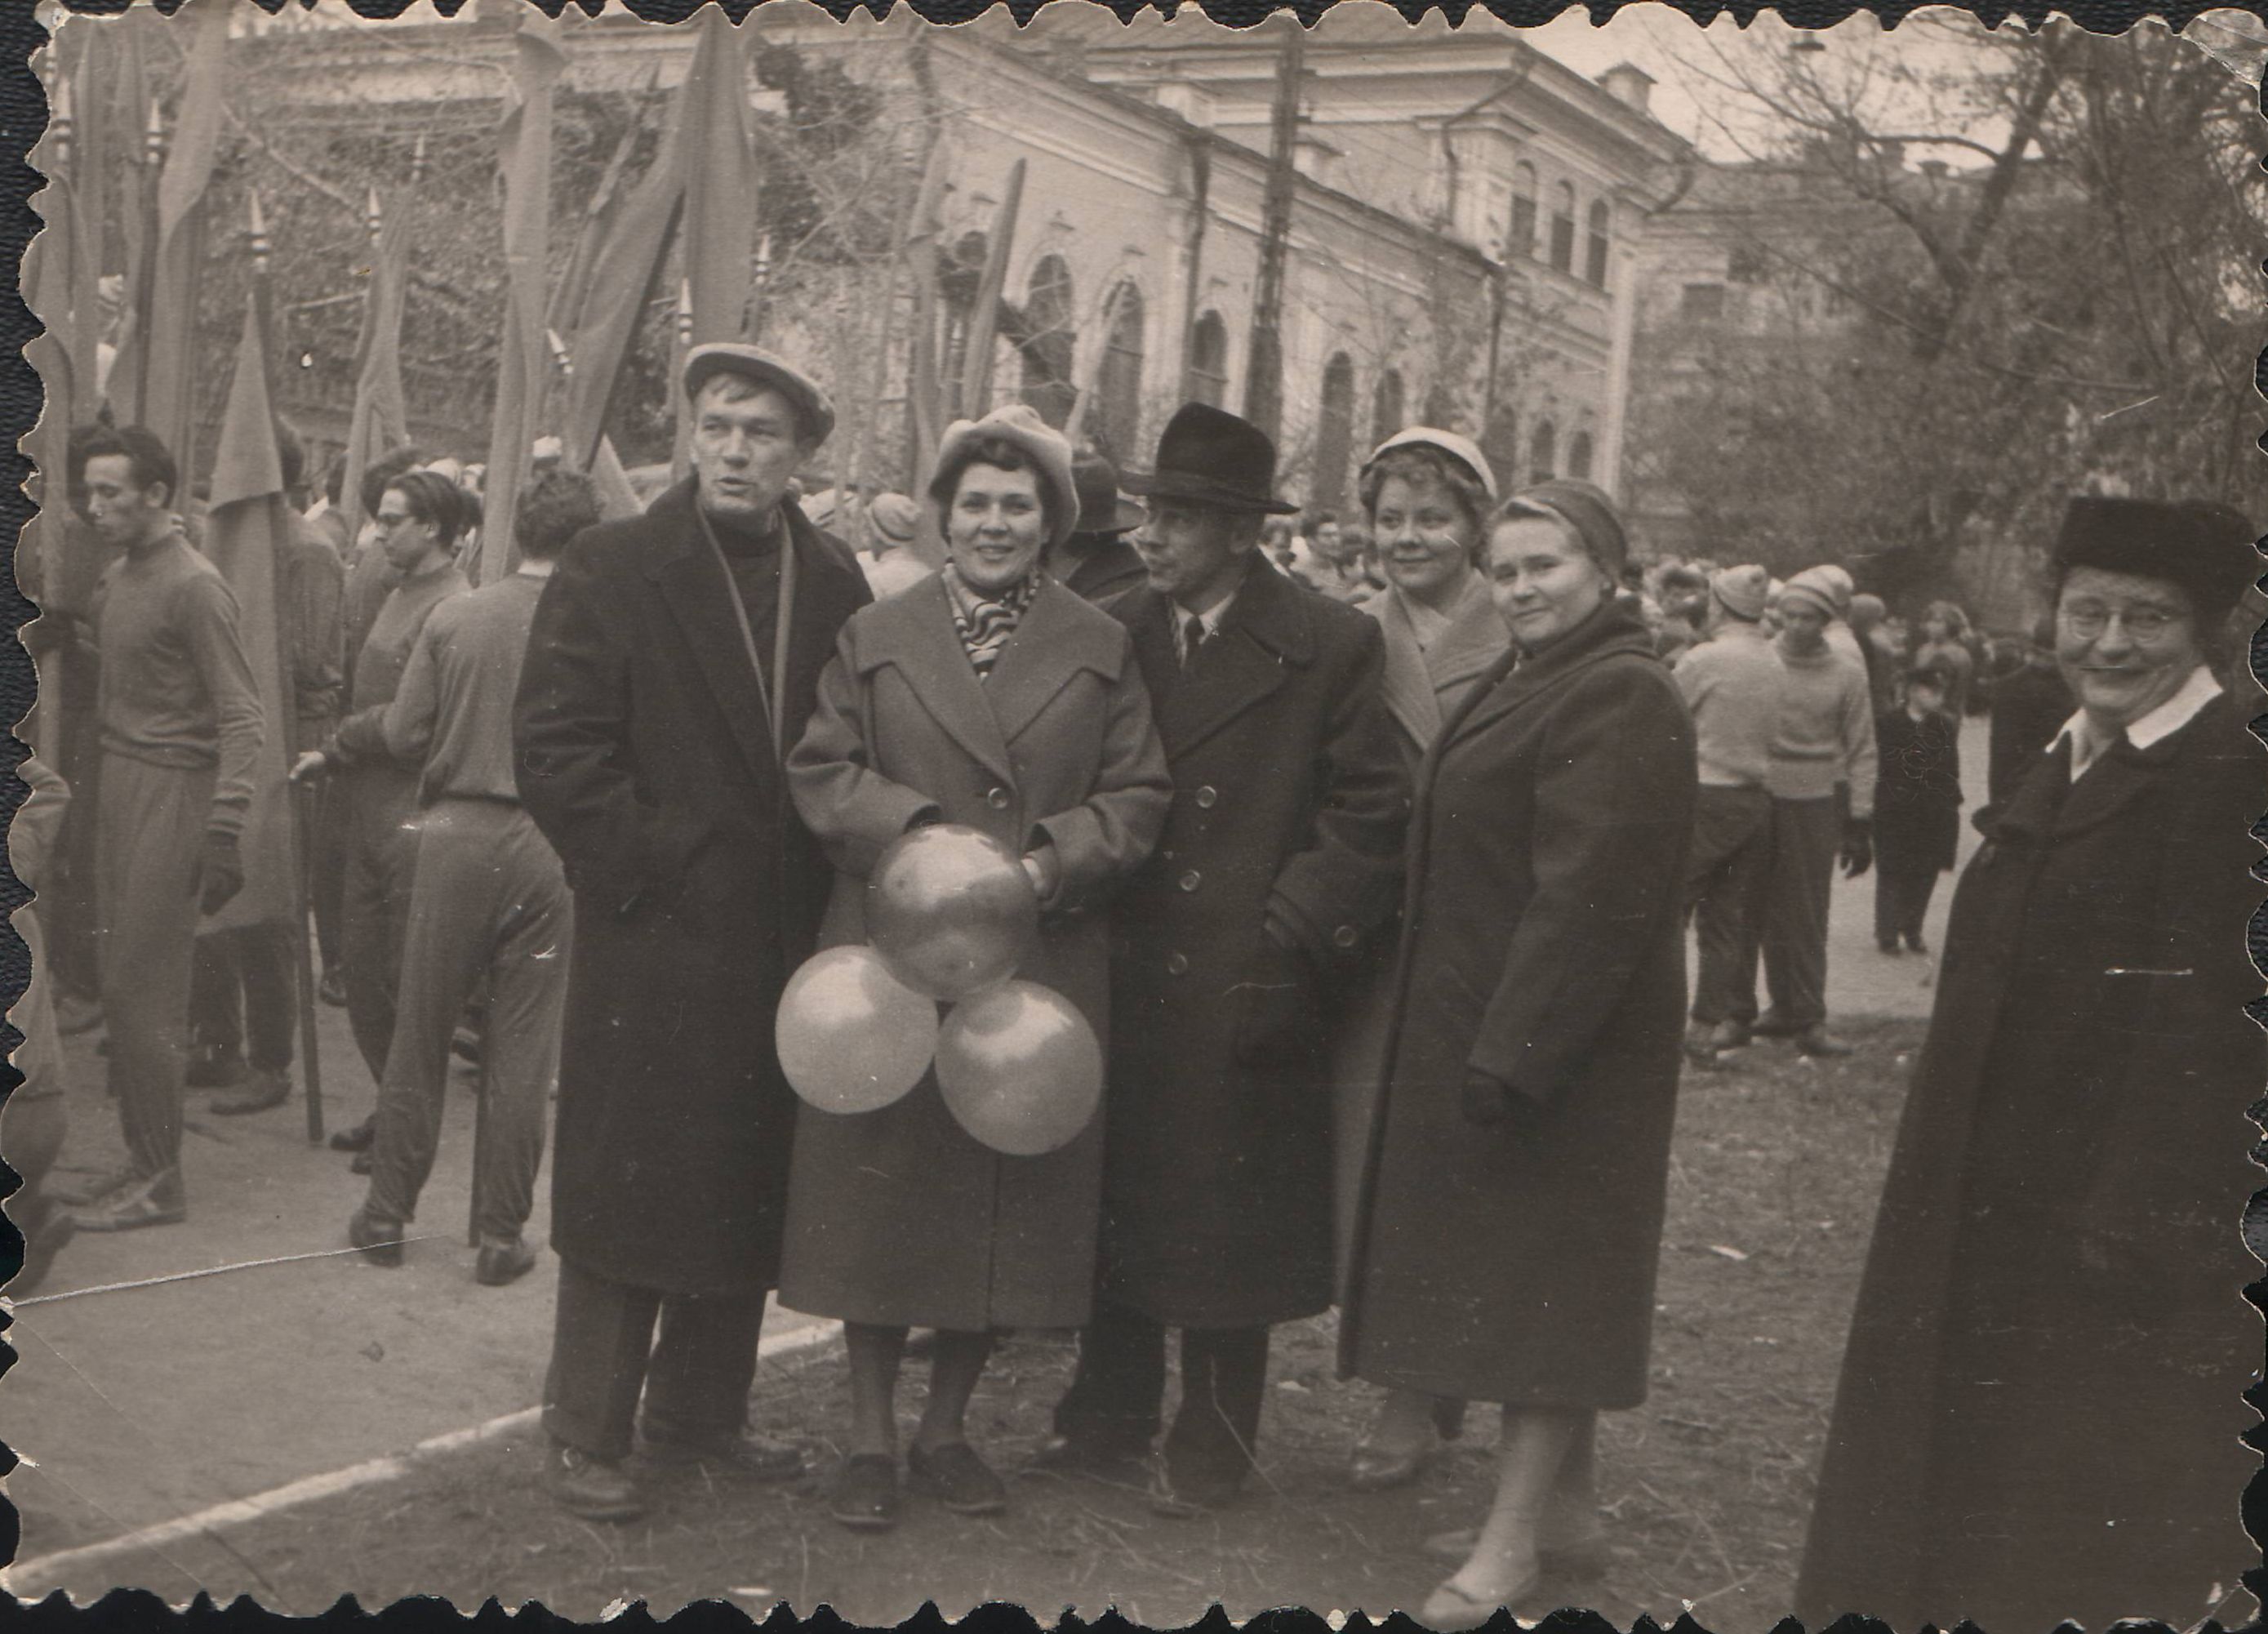 Сегодня праздник старый. Фото с демонстрации 7 ноября старые. Демонстрация 7 ноября в СССР. Демонстрации 7 ноября в Саратове. Демонстрация Самара на 7 ноября старые снимки.